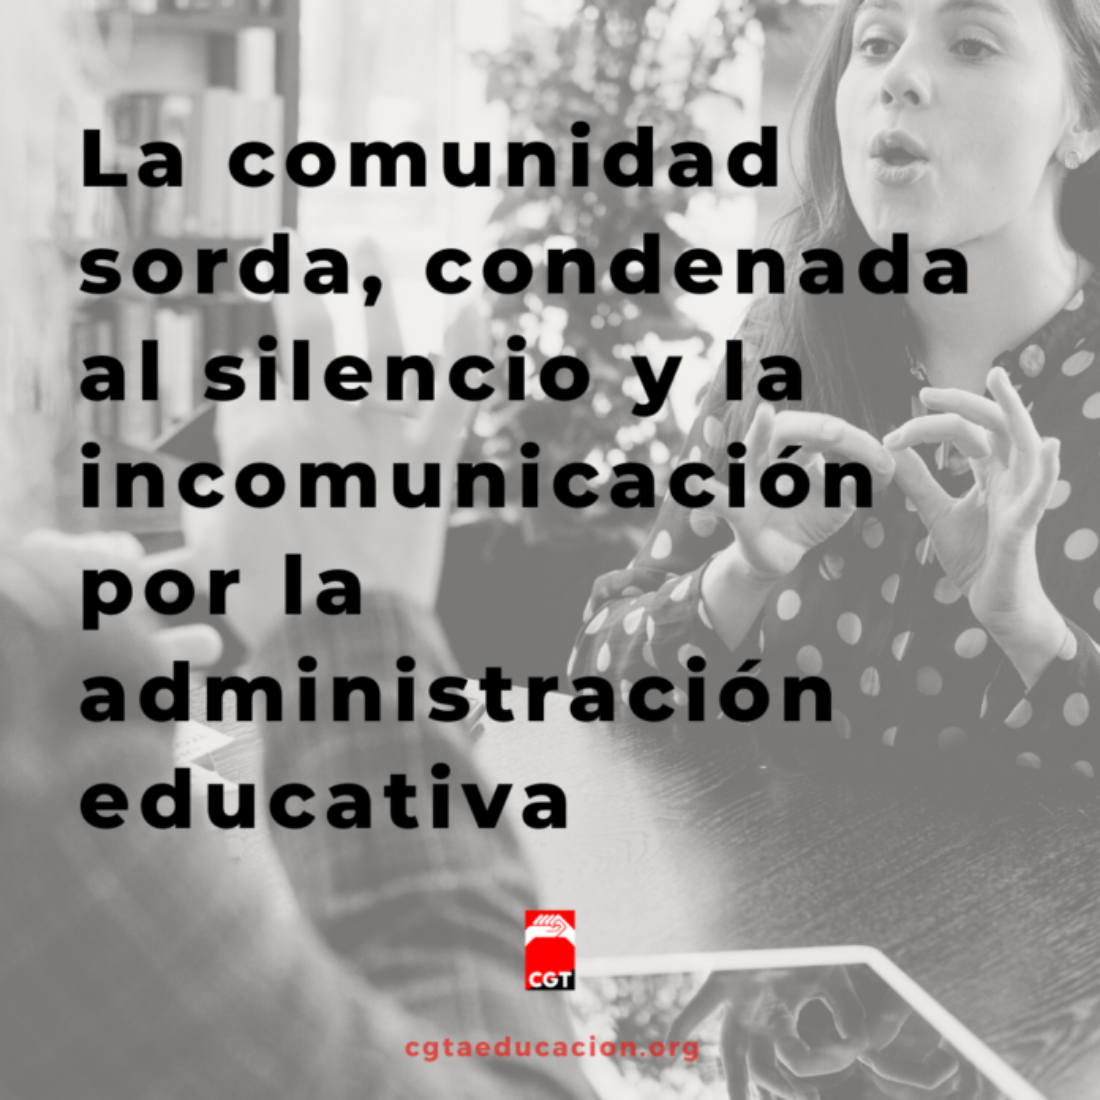 La comunidad sorda, condenada al silencio y la incomunicación por la administración educativa